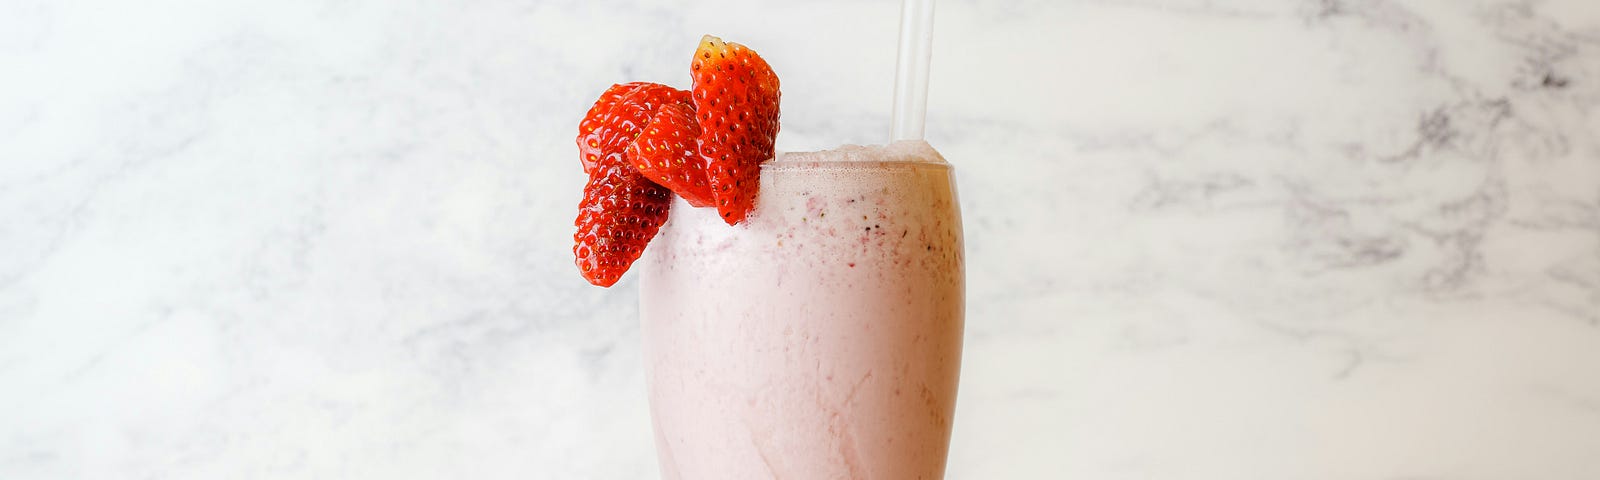 Strawberry shake with fresh strawberry garnish